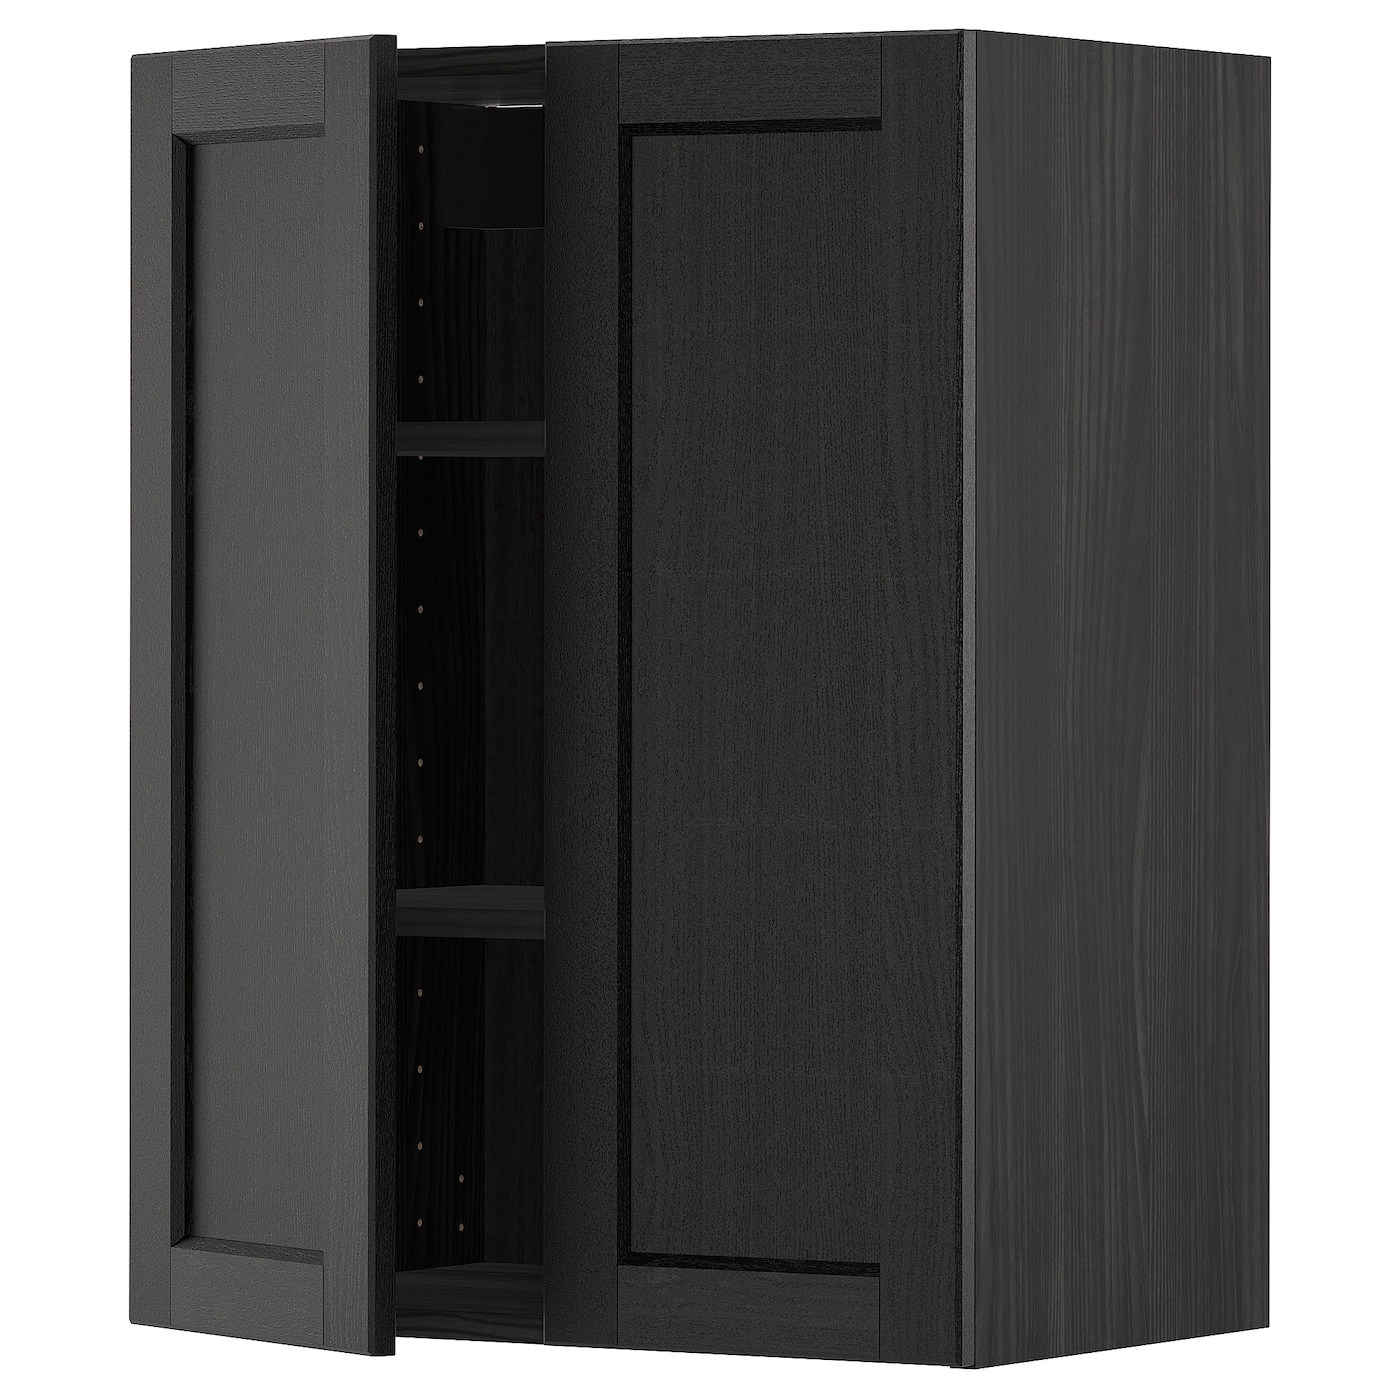 Навесной шкаф с полкой - METOD IKEA/ МЕТОД ИКЕА, 80х60 см, черный